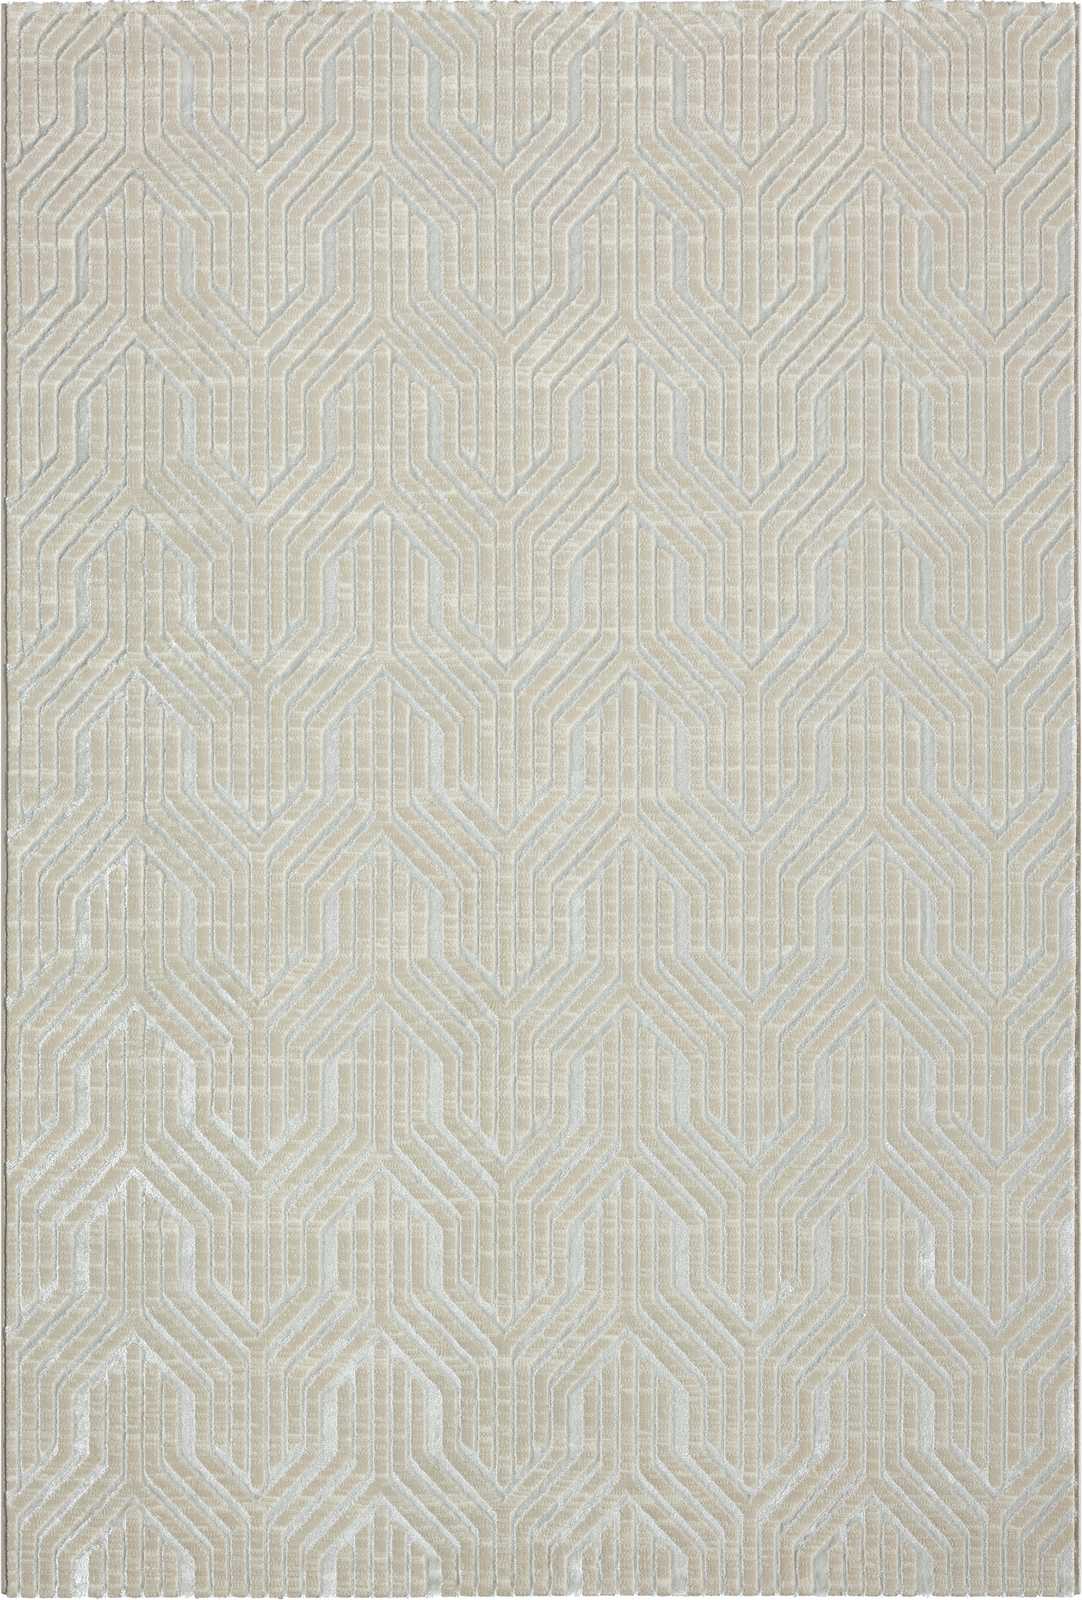             Sanfter Hochflor Teppich in Creme – 290 x 200 cm
        